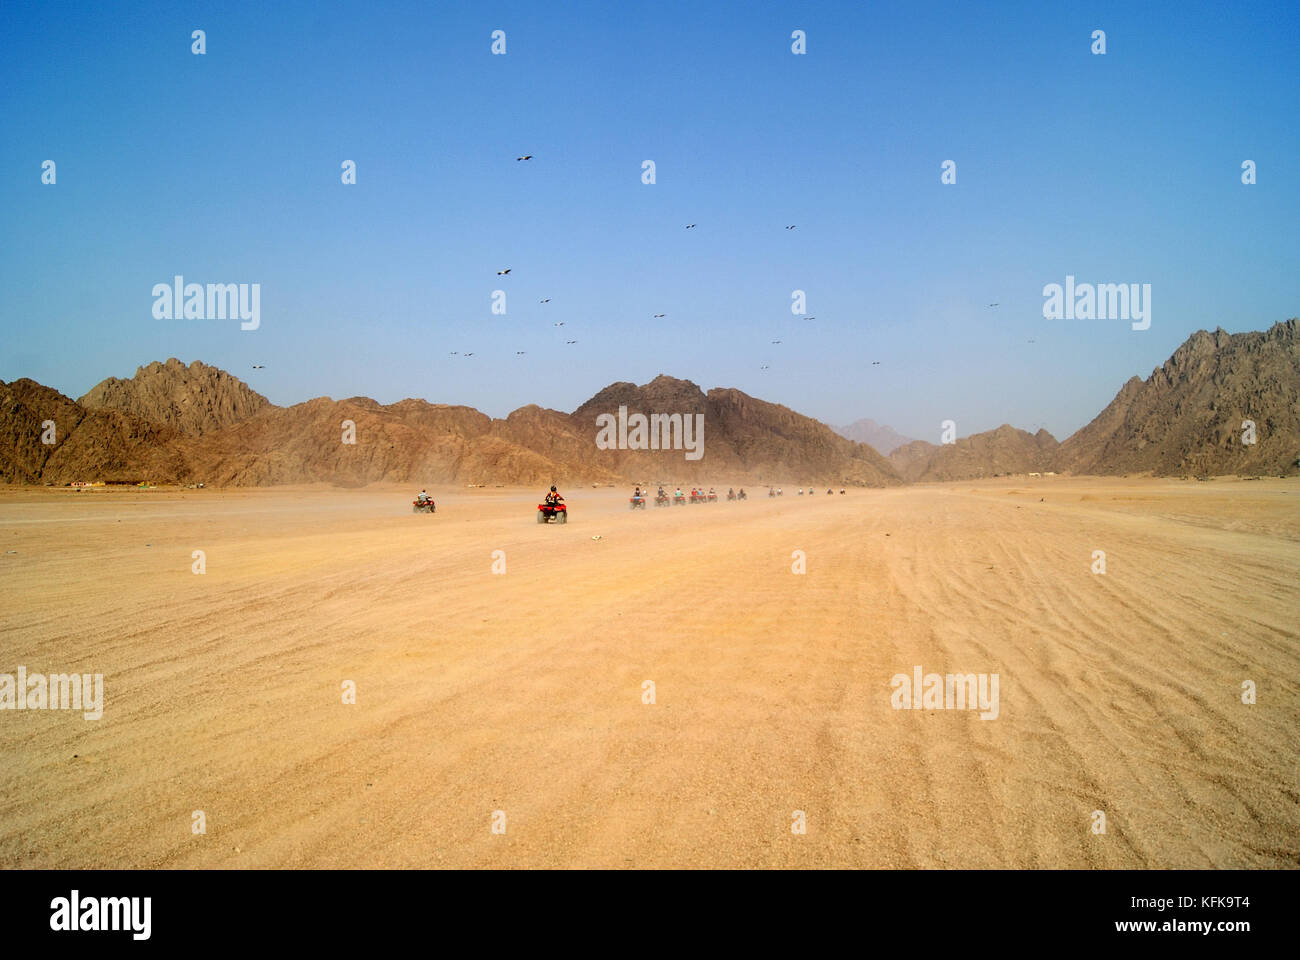 Égypte, sharm el sheikh - 23 septembre : un groupe de touriste voyage à travers le désert égyptien sur les VTT ; la chaîne des quads laisse le spectateur vers le m Banque D'Images